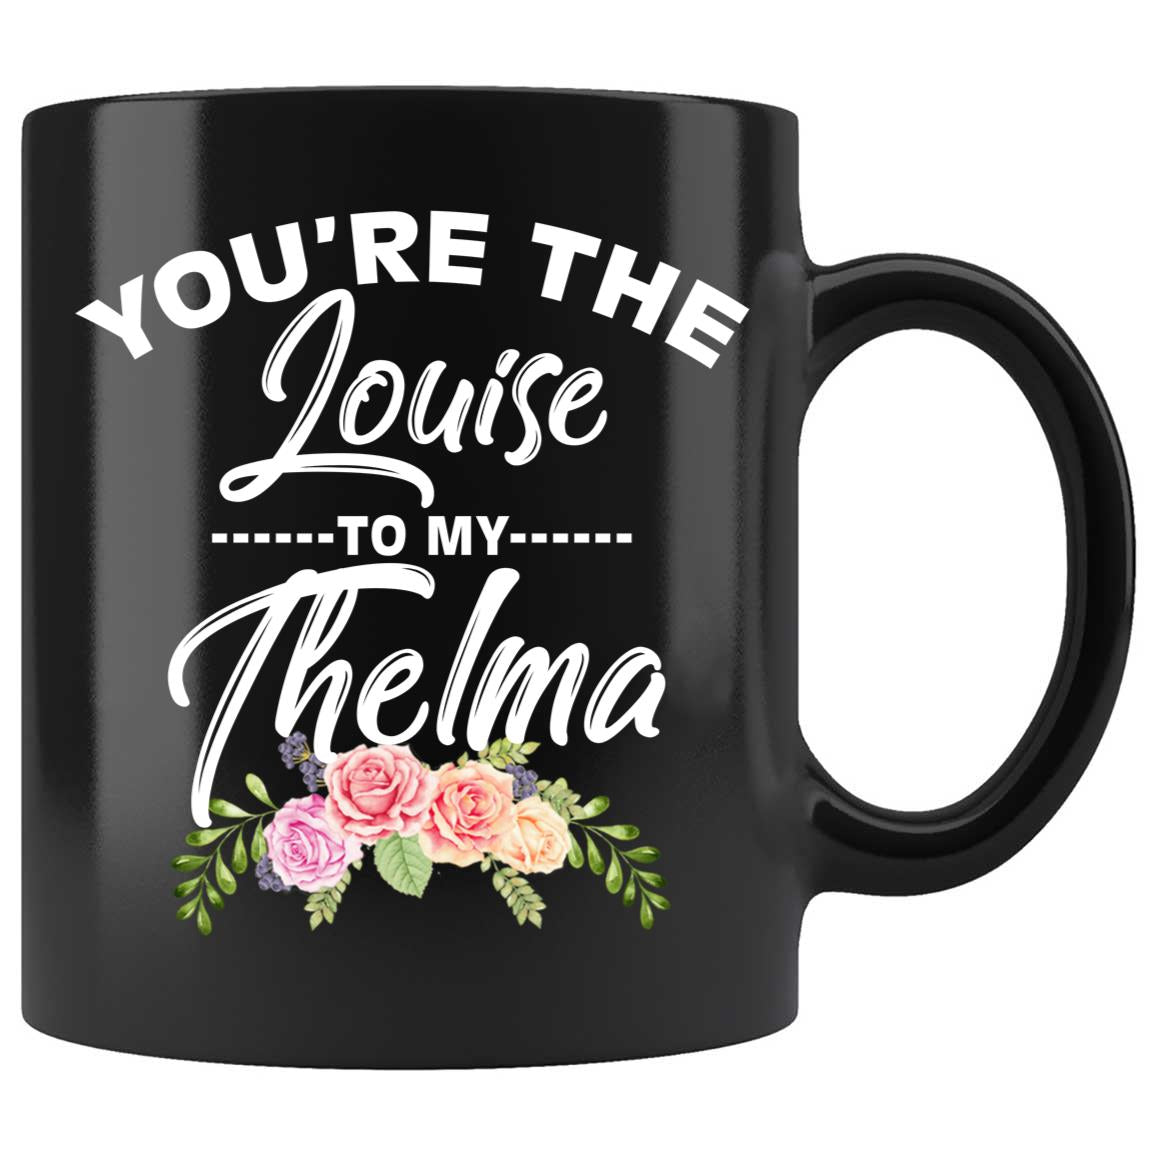 Thelma and Louise Gifts, Thelma and Louise, Thelma My Louise, Thelma Louise  Cup